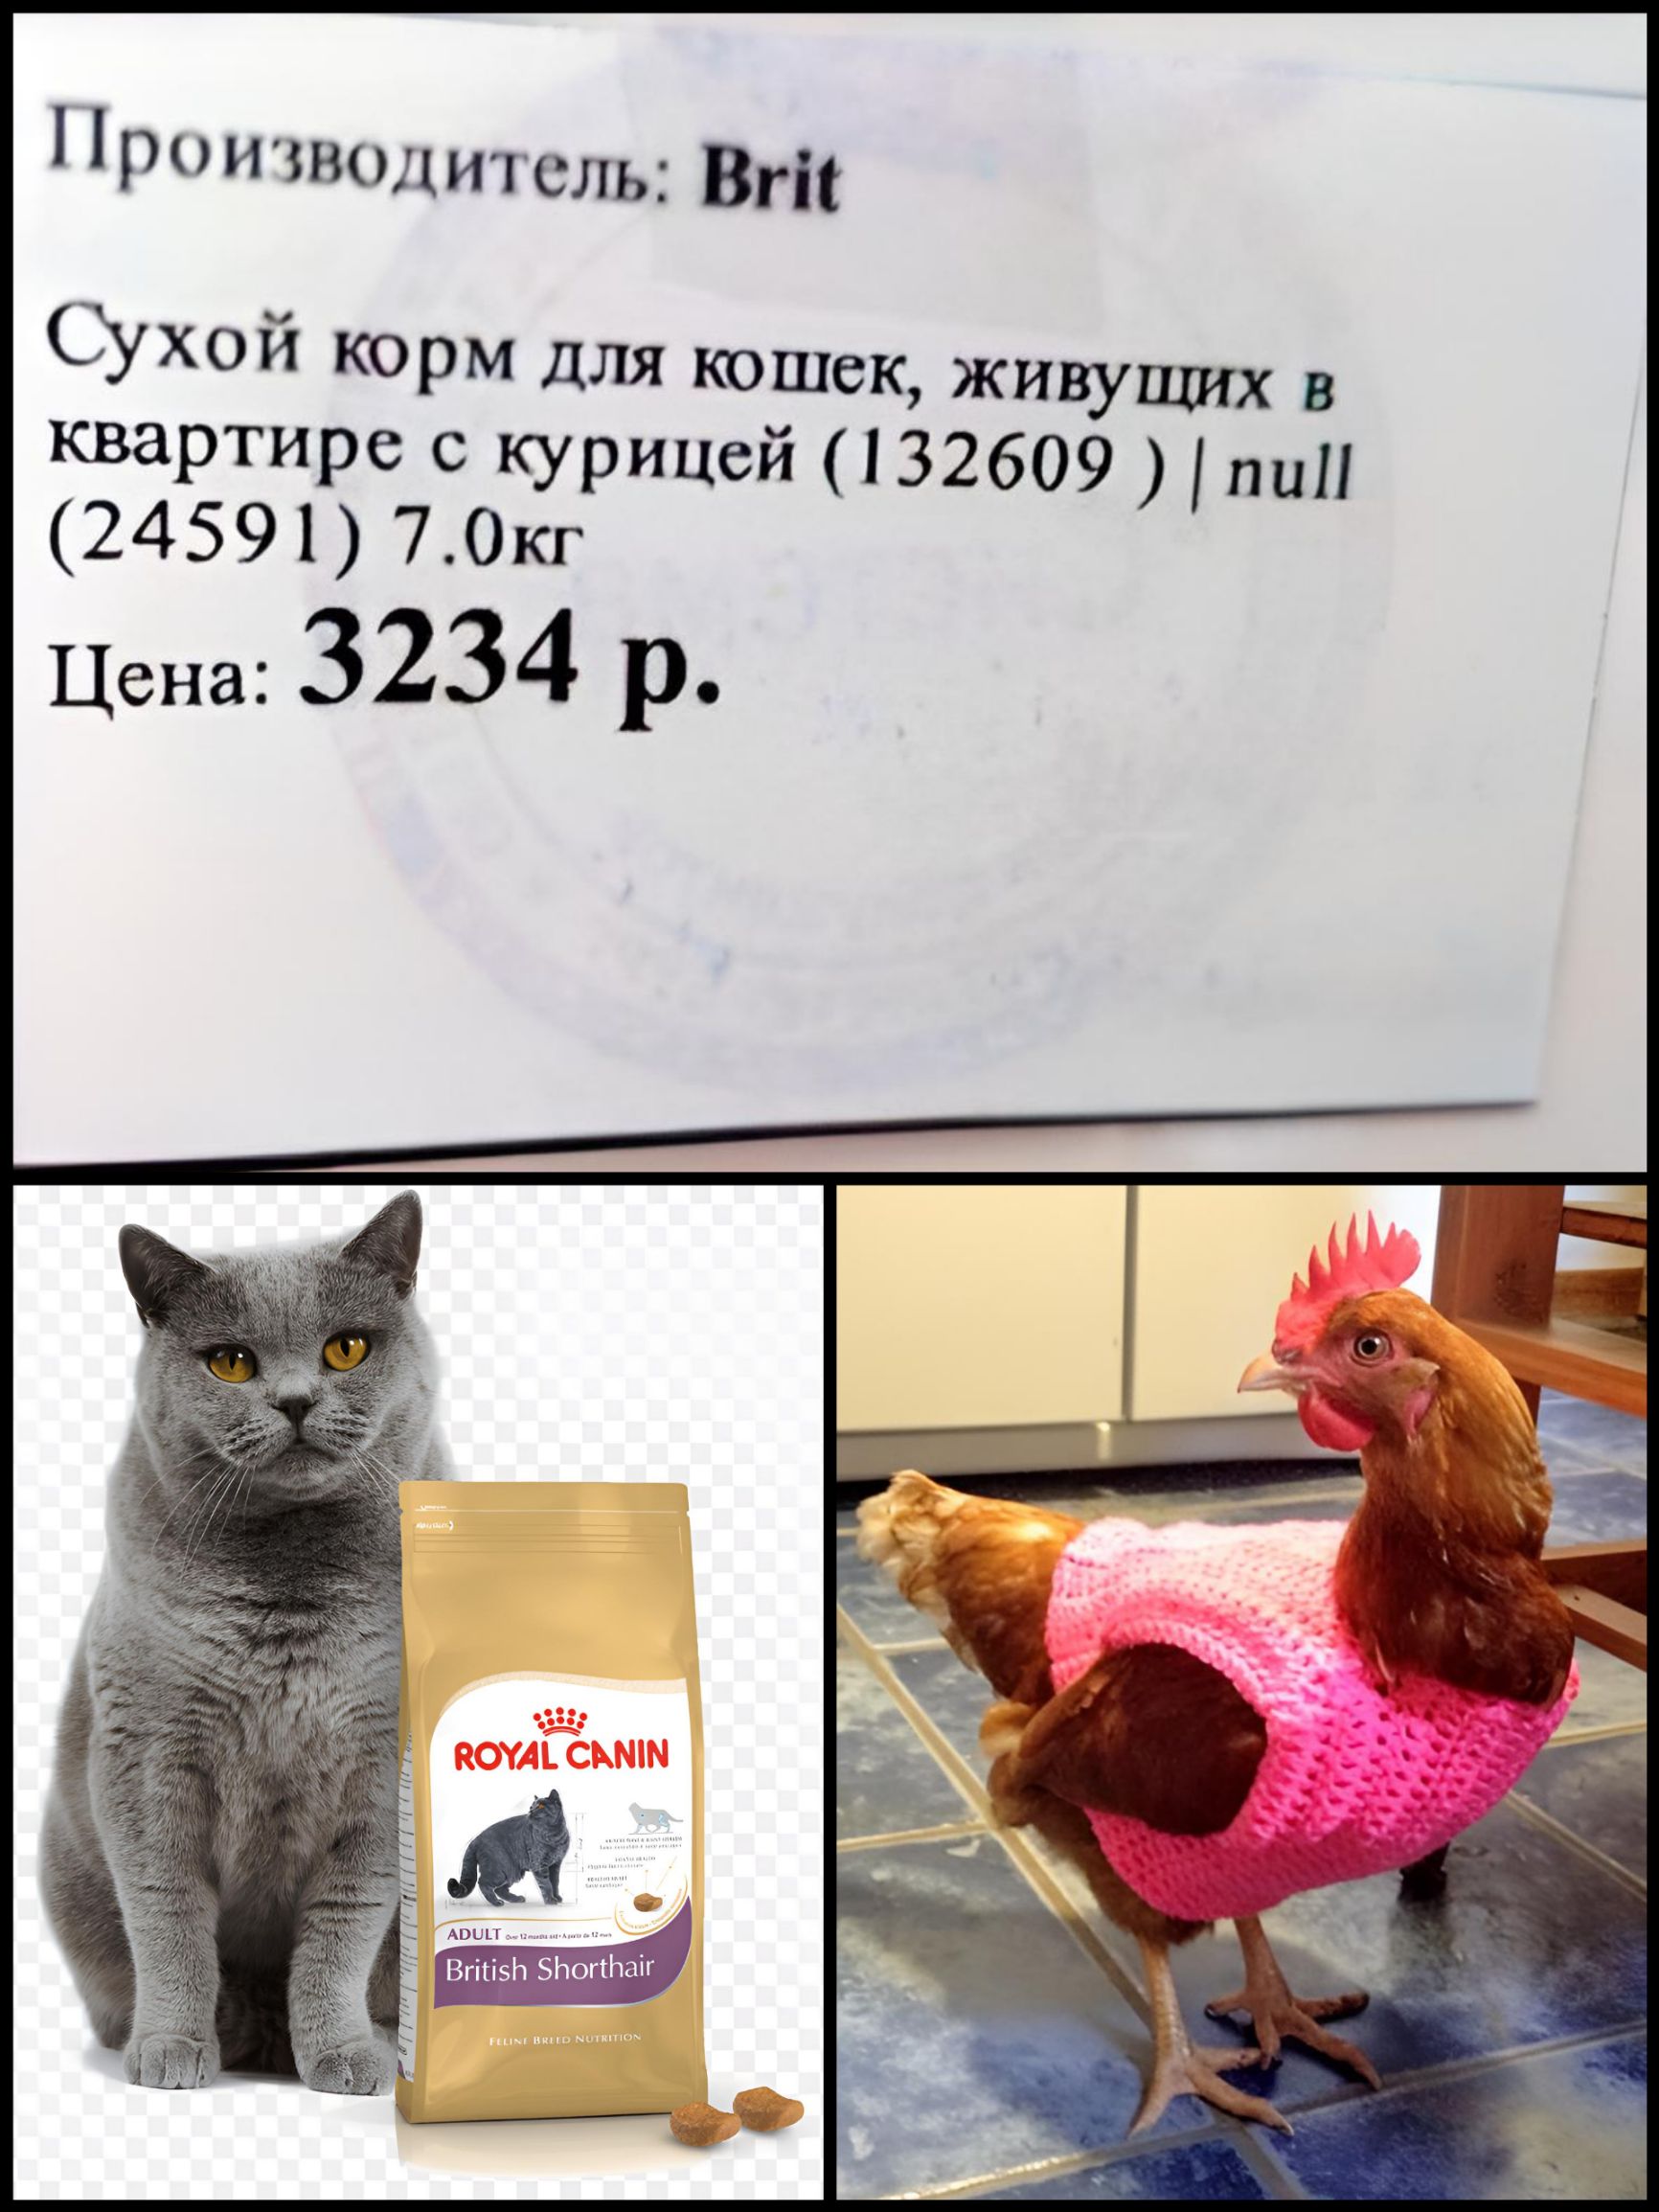 Проичиолитель вт Сухой корм для кошек живущих квартире с курицей 132609 пиП 24591 70кг Цена 3234 р